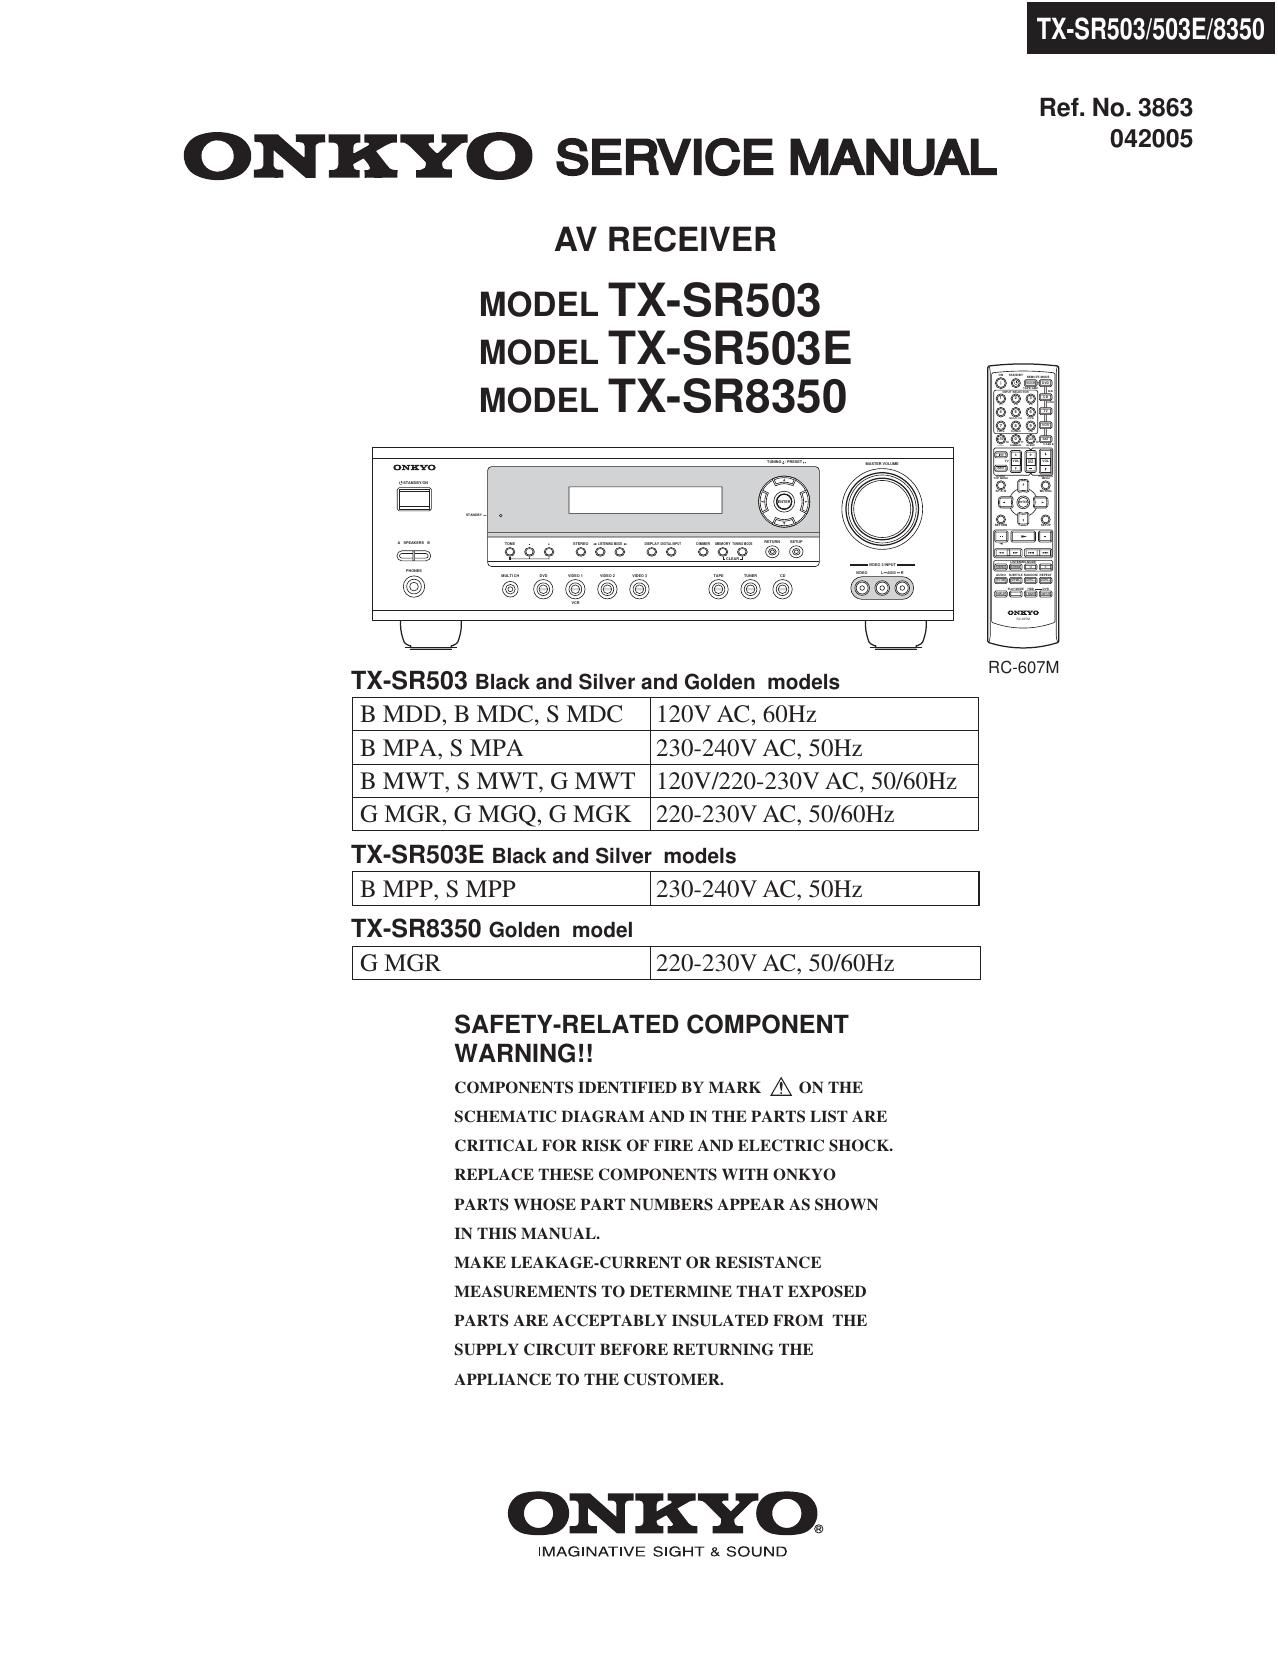 Onkyo TXSR 8350 Service Manual